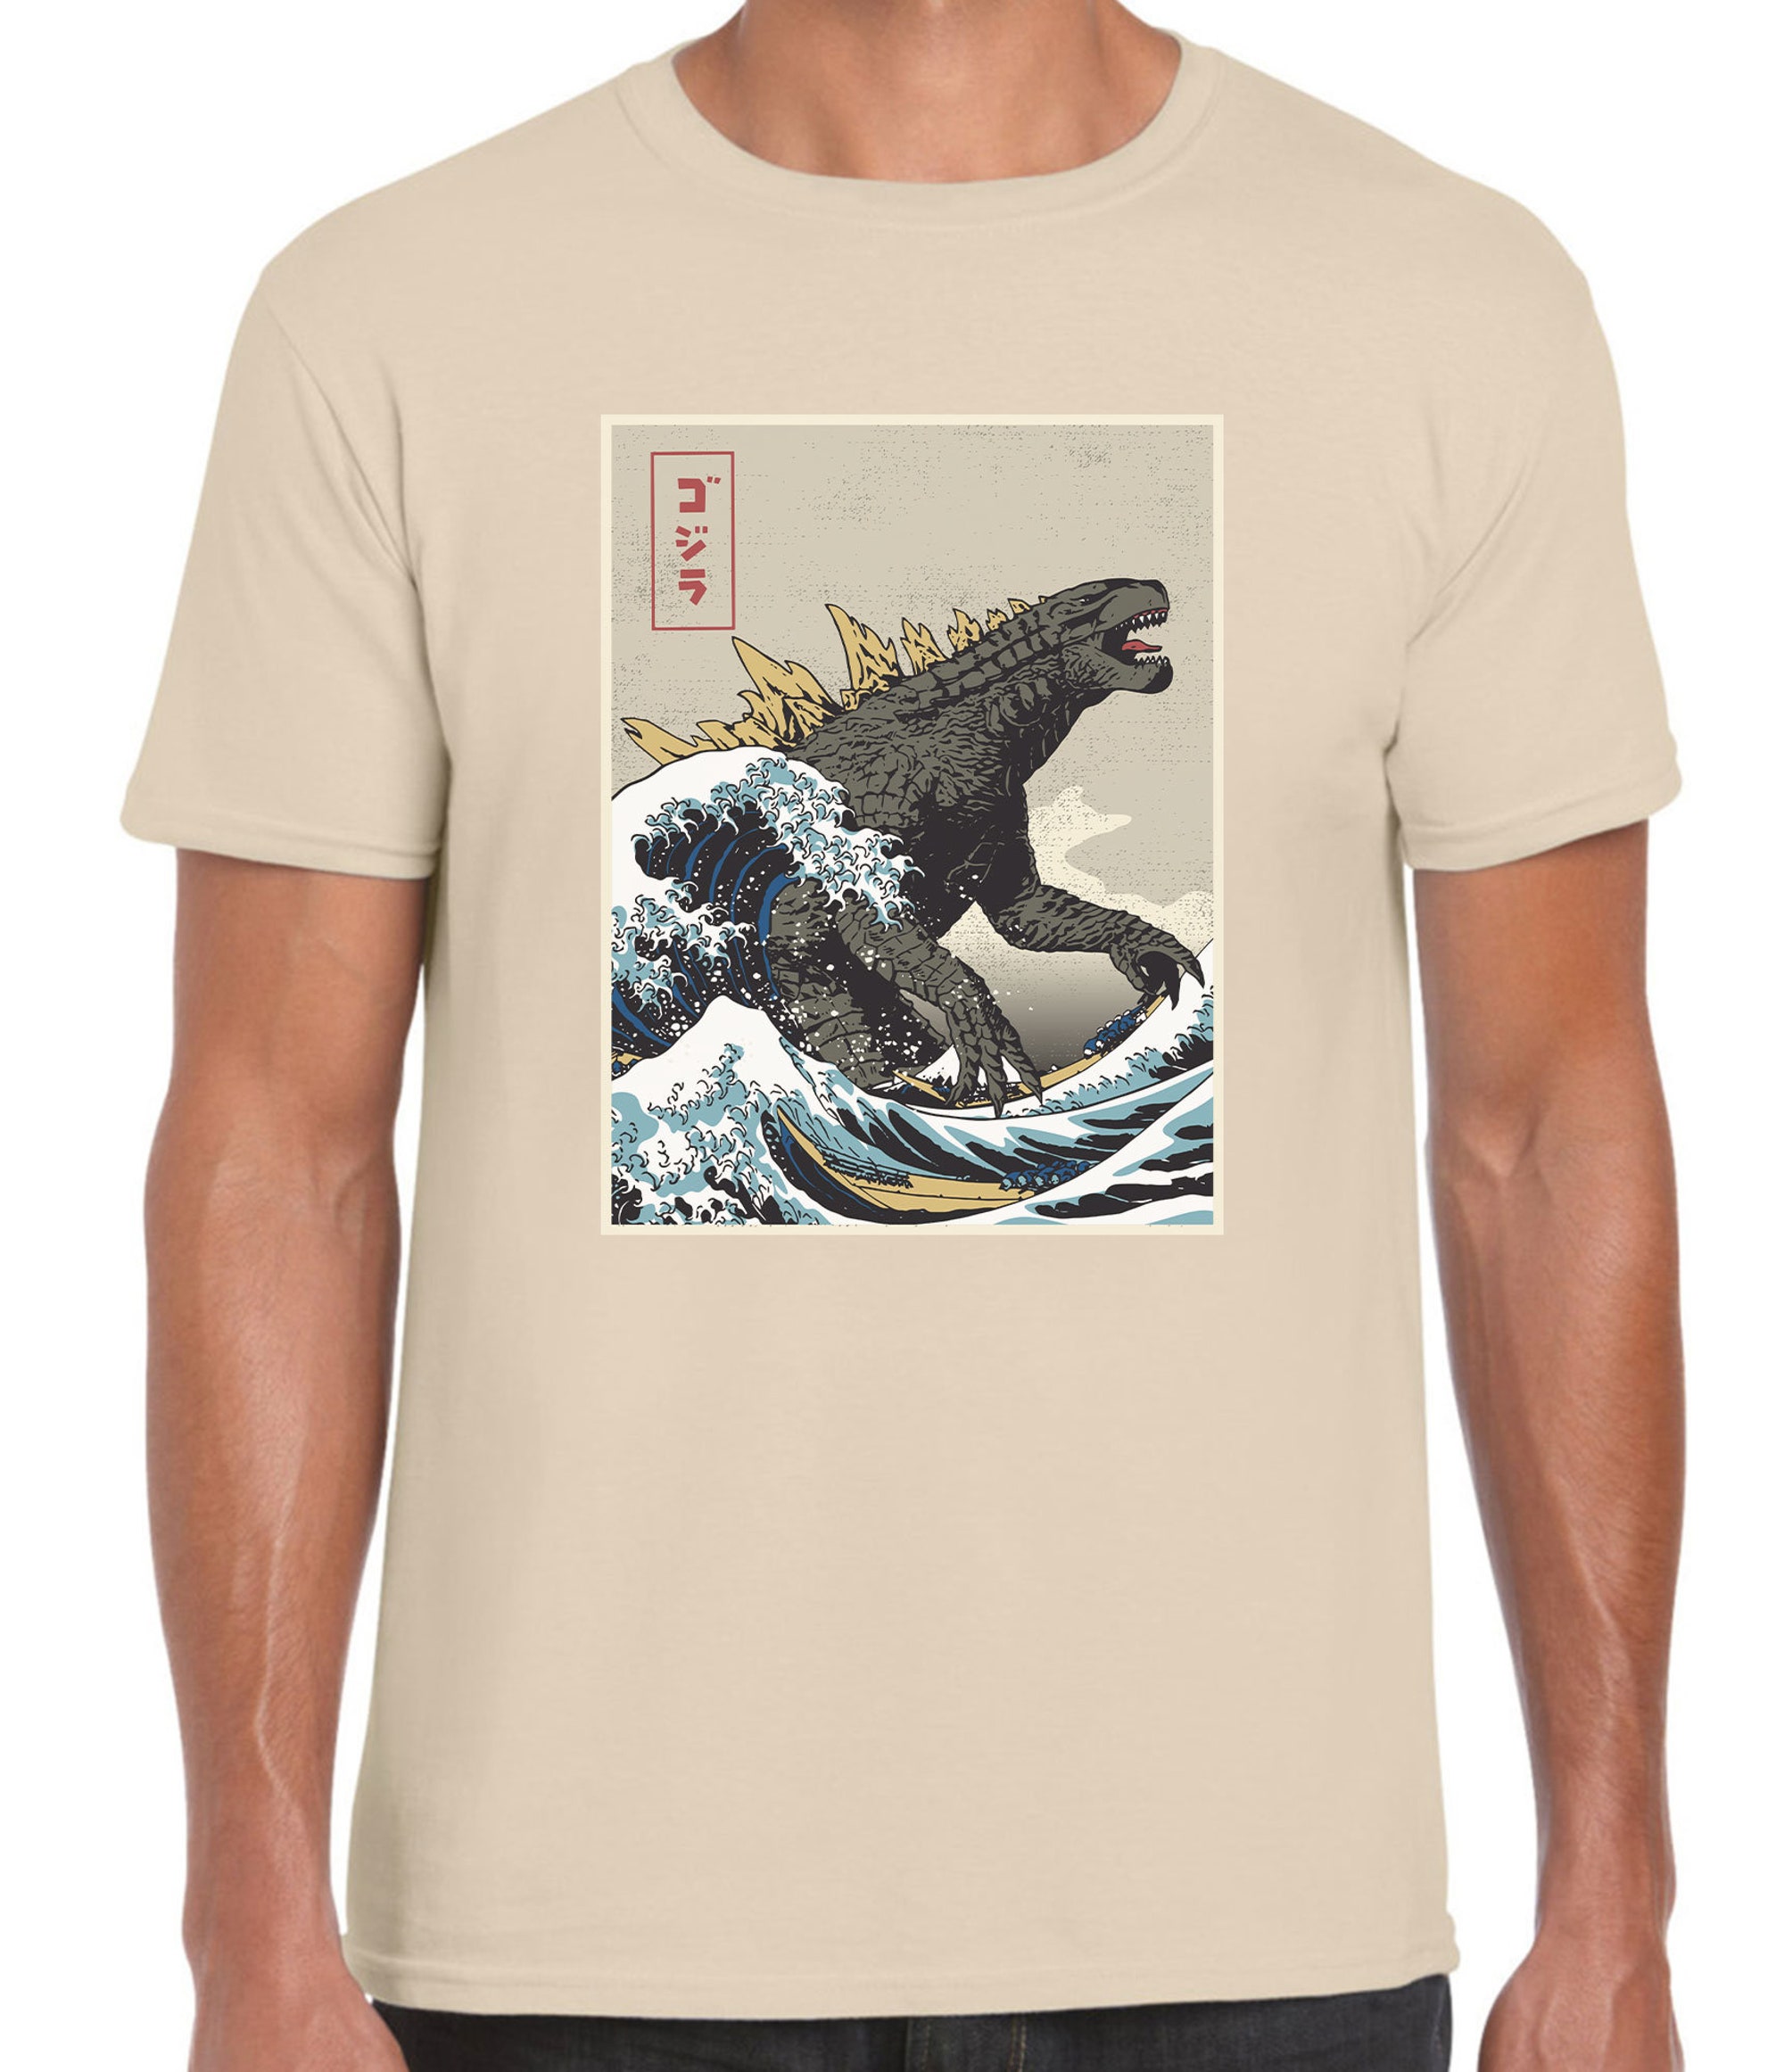 Discover The Great Godzilla off Kanagawa Unisex, The Great Wave Hokusai and Godzilla T-shirt